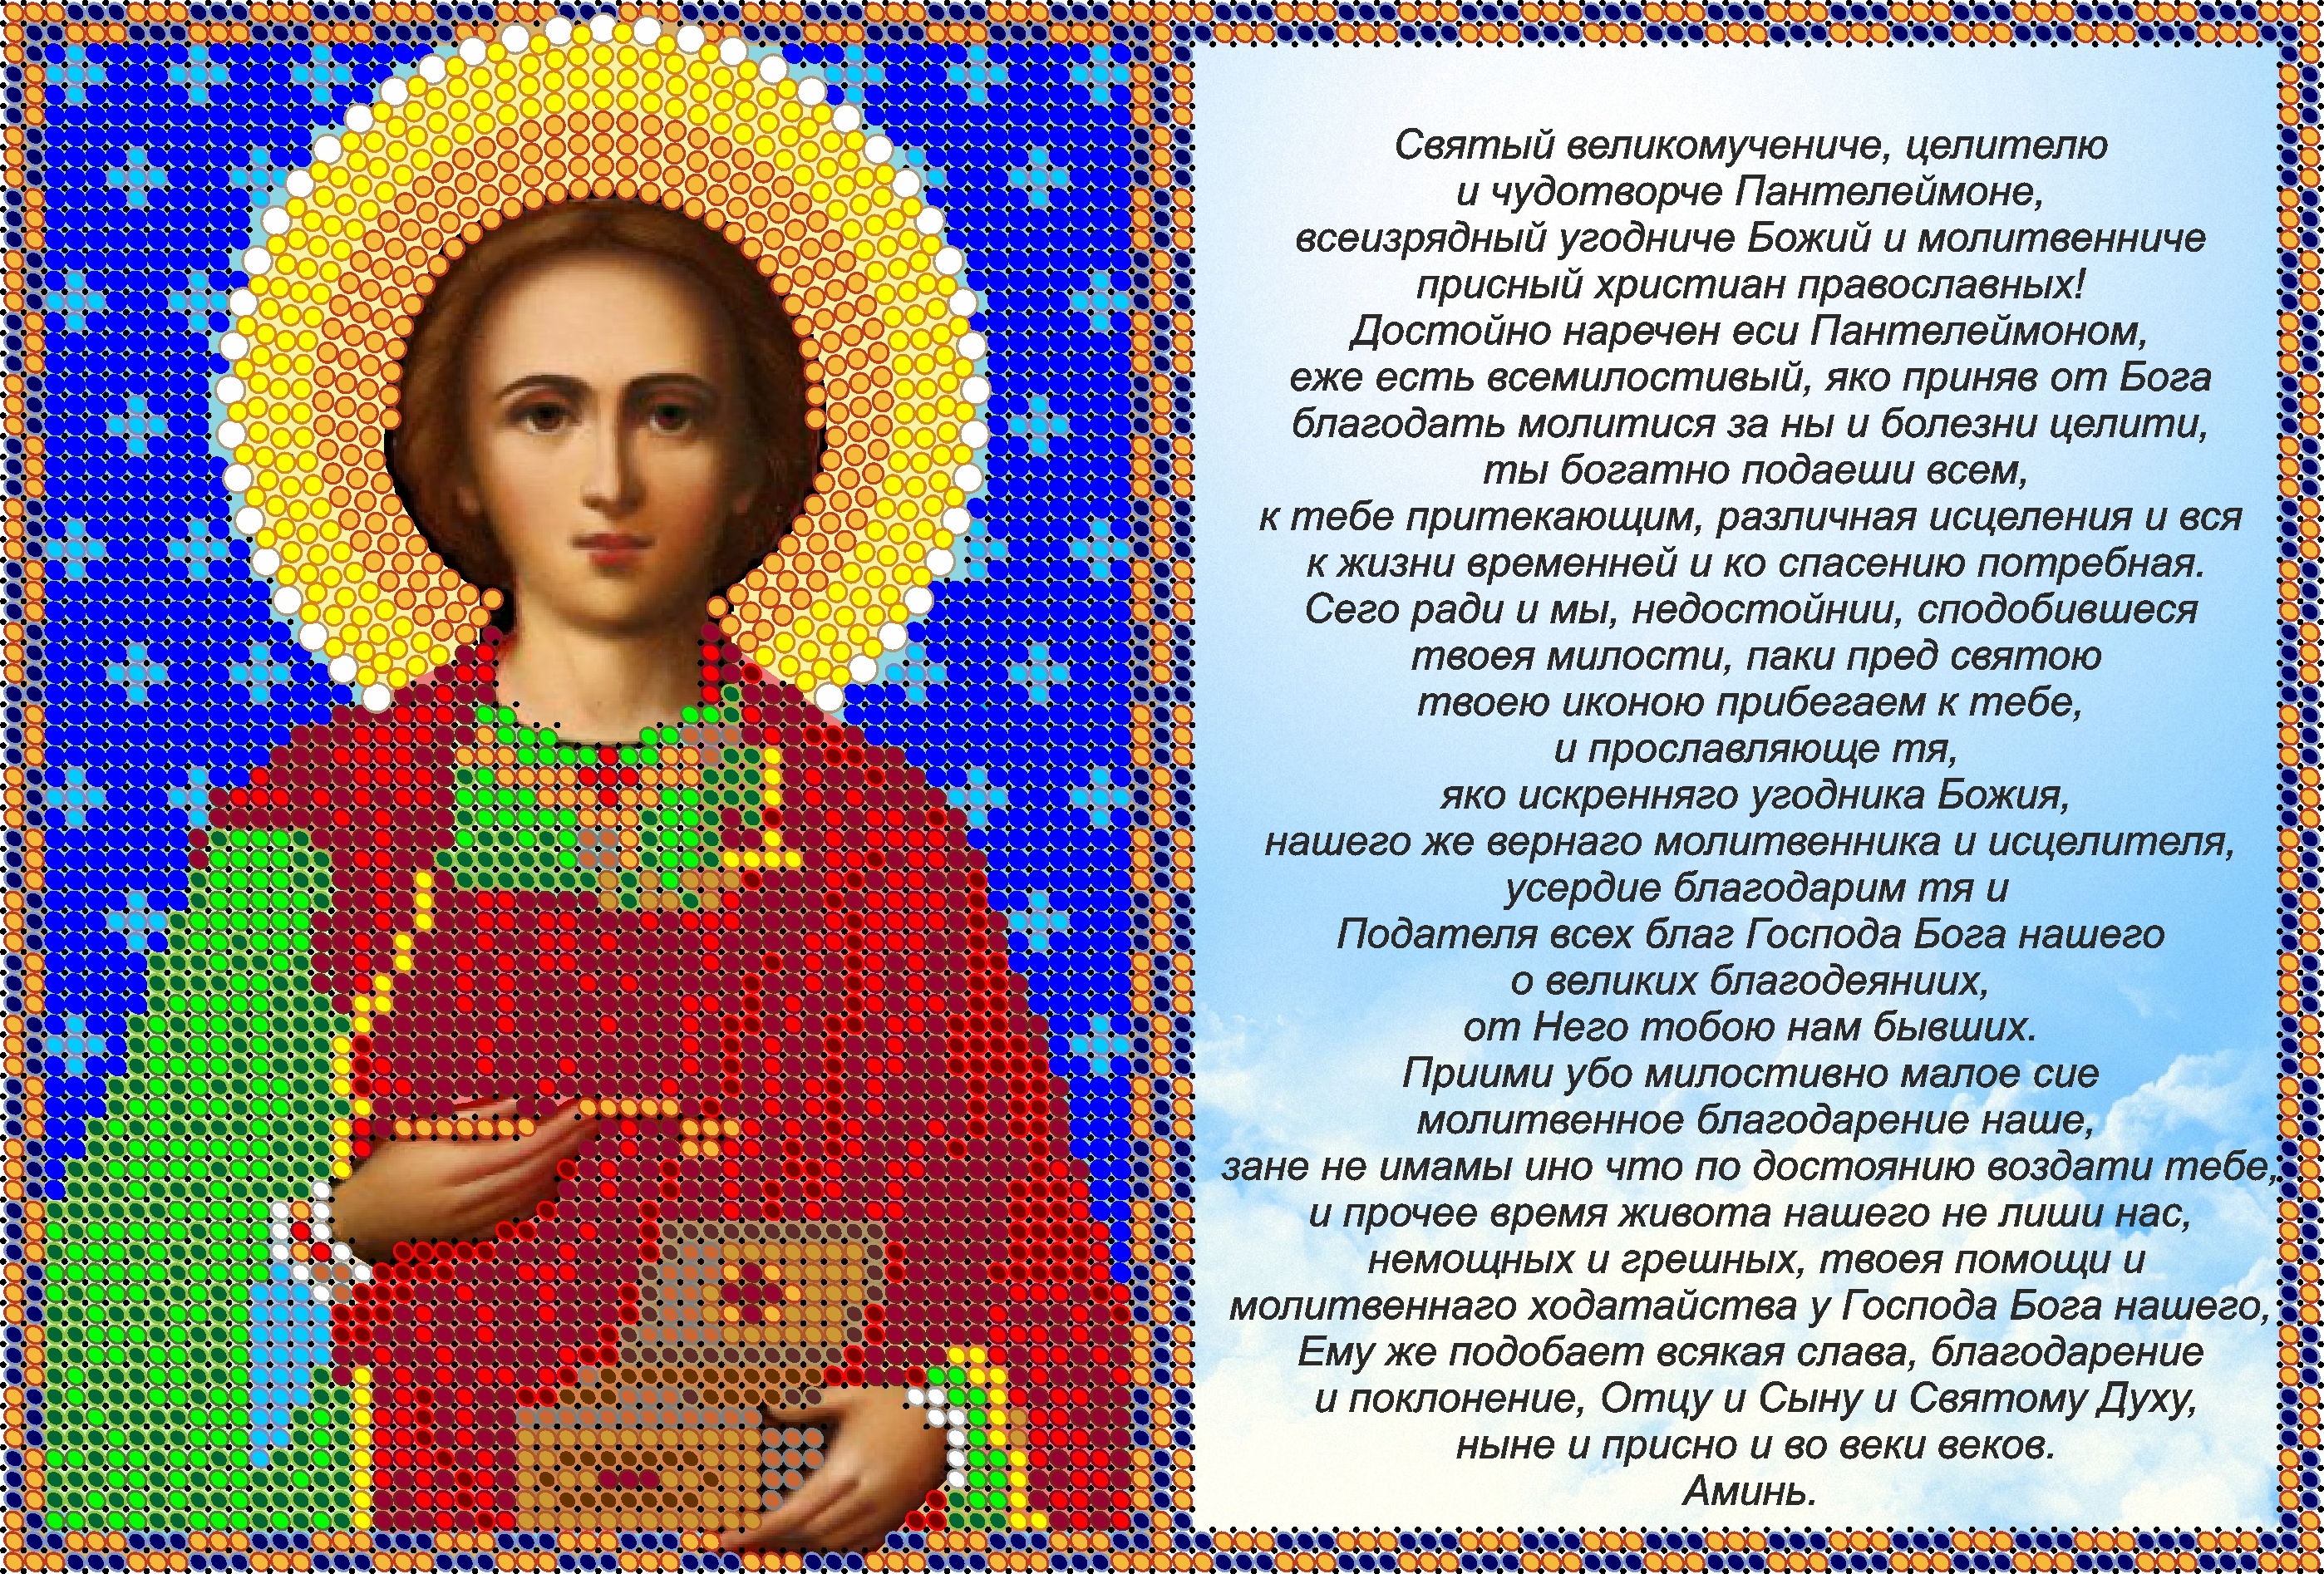 Молитва к пантелеймону целителю. Икона Святого Пантелеймона целителя с молитвой. 9 Августа день Пантелеймона целителя.